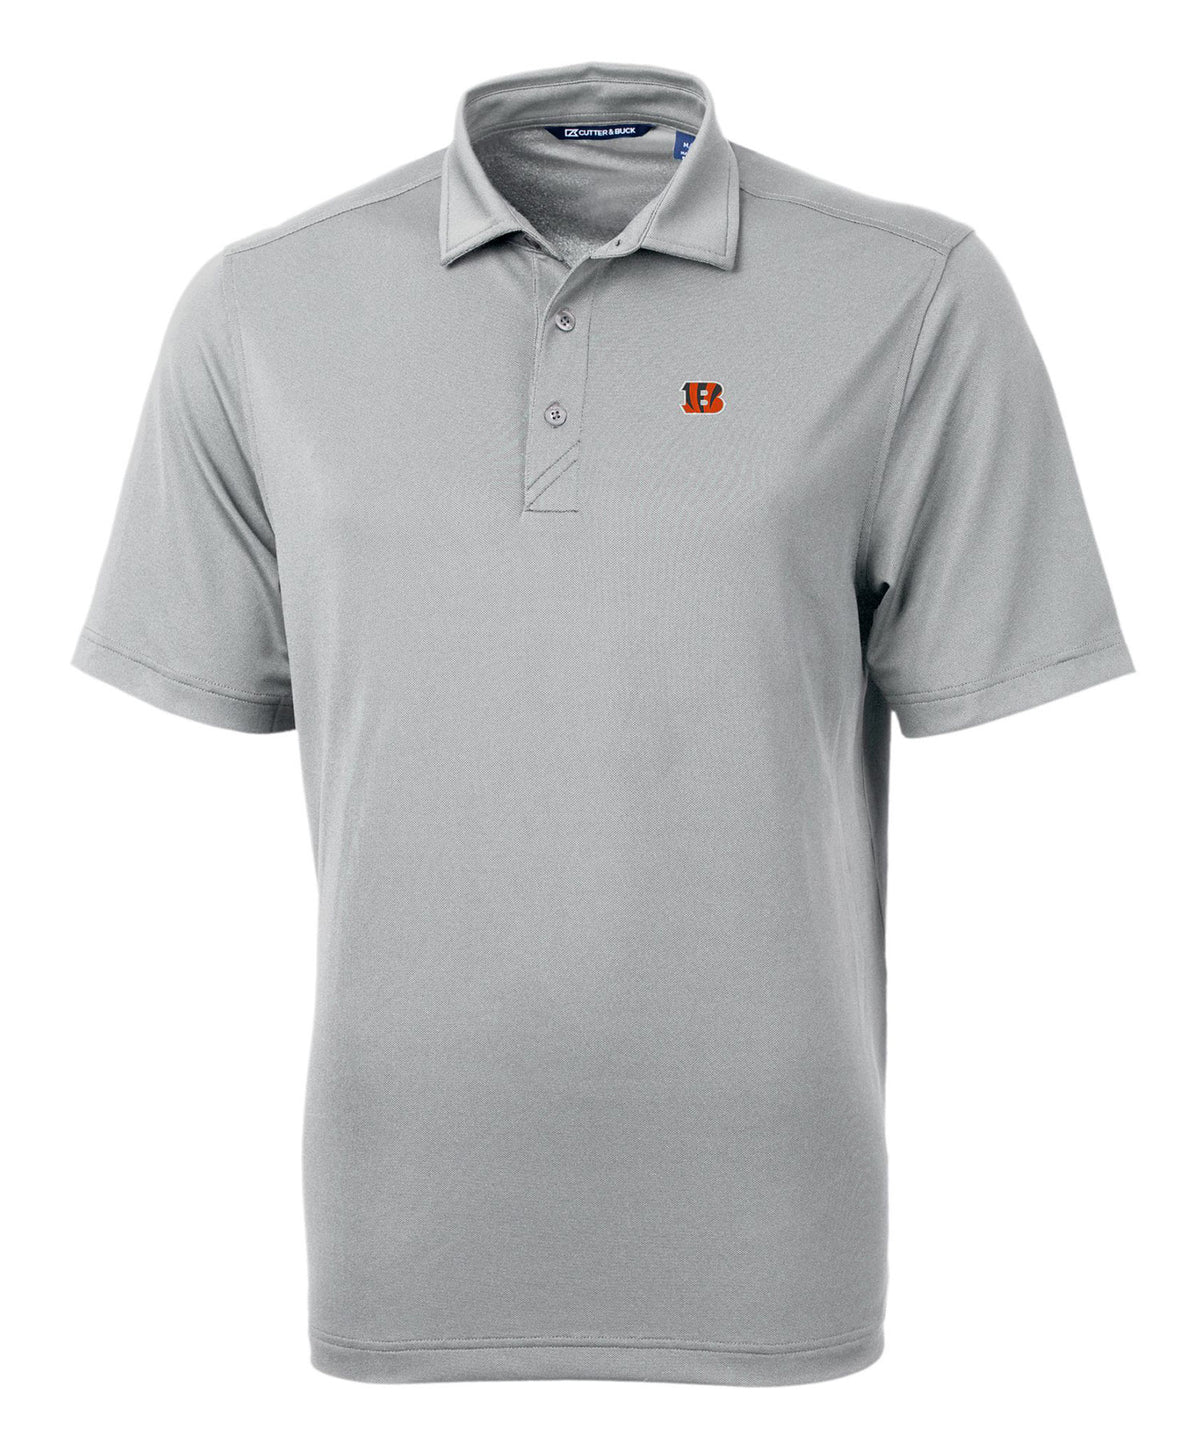 Cutter & Buck Cincinnati Bengals Short Sleeve Polo Knit Shirt, Men's Big & Tall